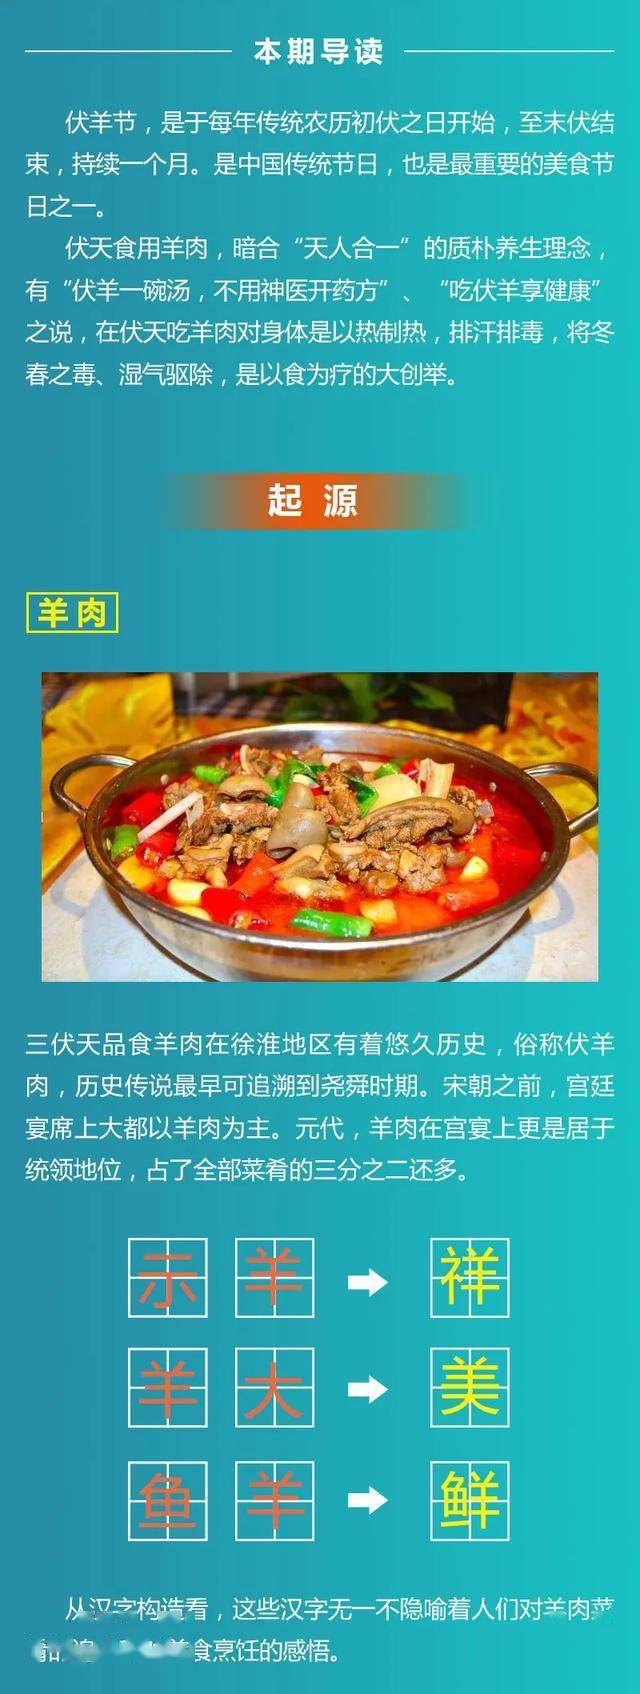 中国(徐州)彭祖伏羊节丨细说伏羊节的饮食文化